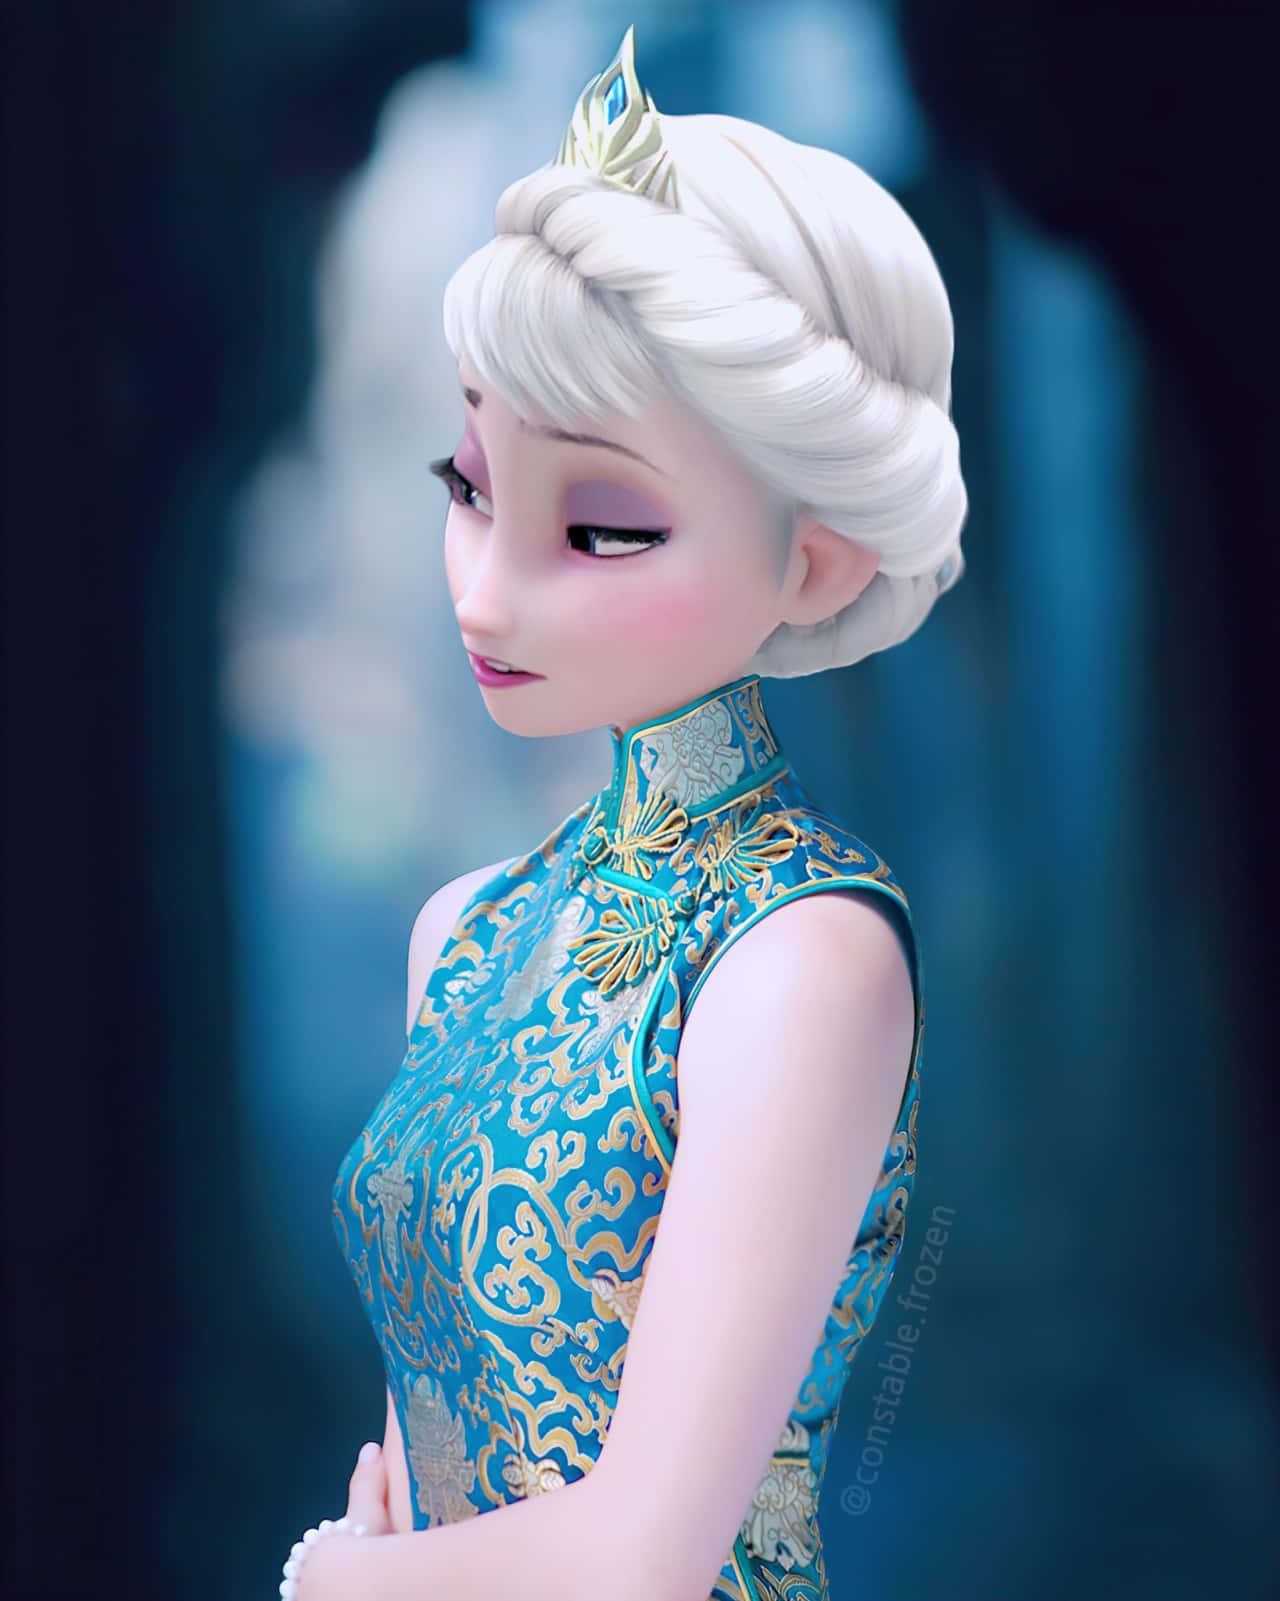 Un'eleganterappresentazione Di Elsa, La Regina Del Ghiaccio Di Frozen Di Disney.